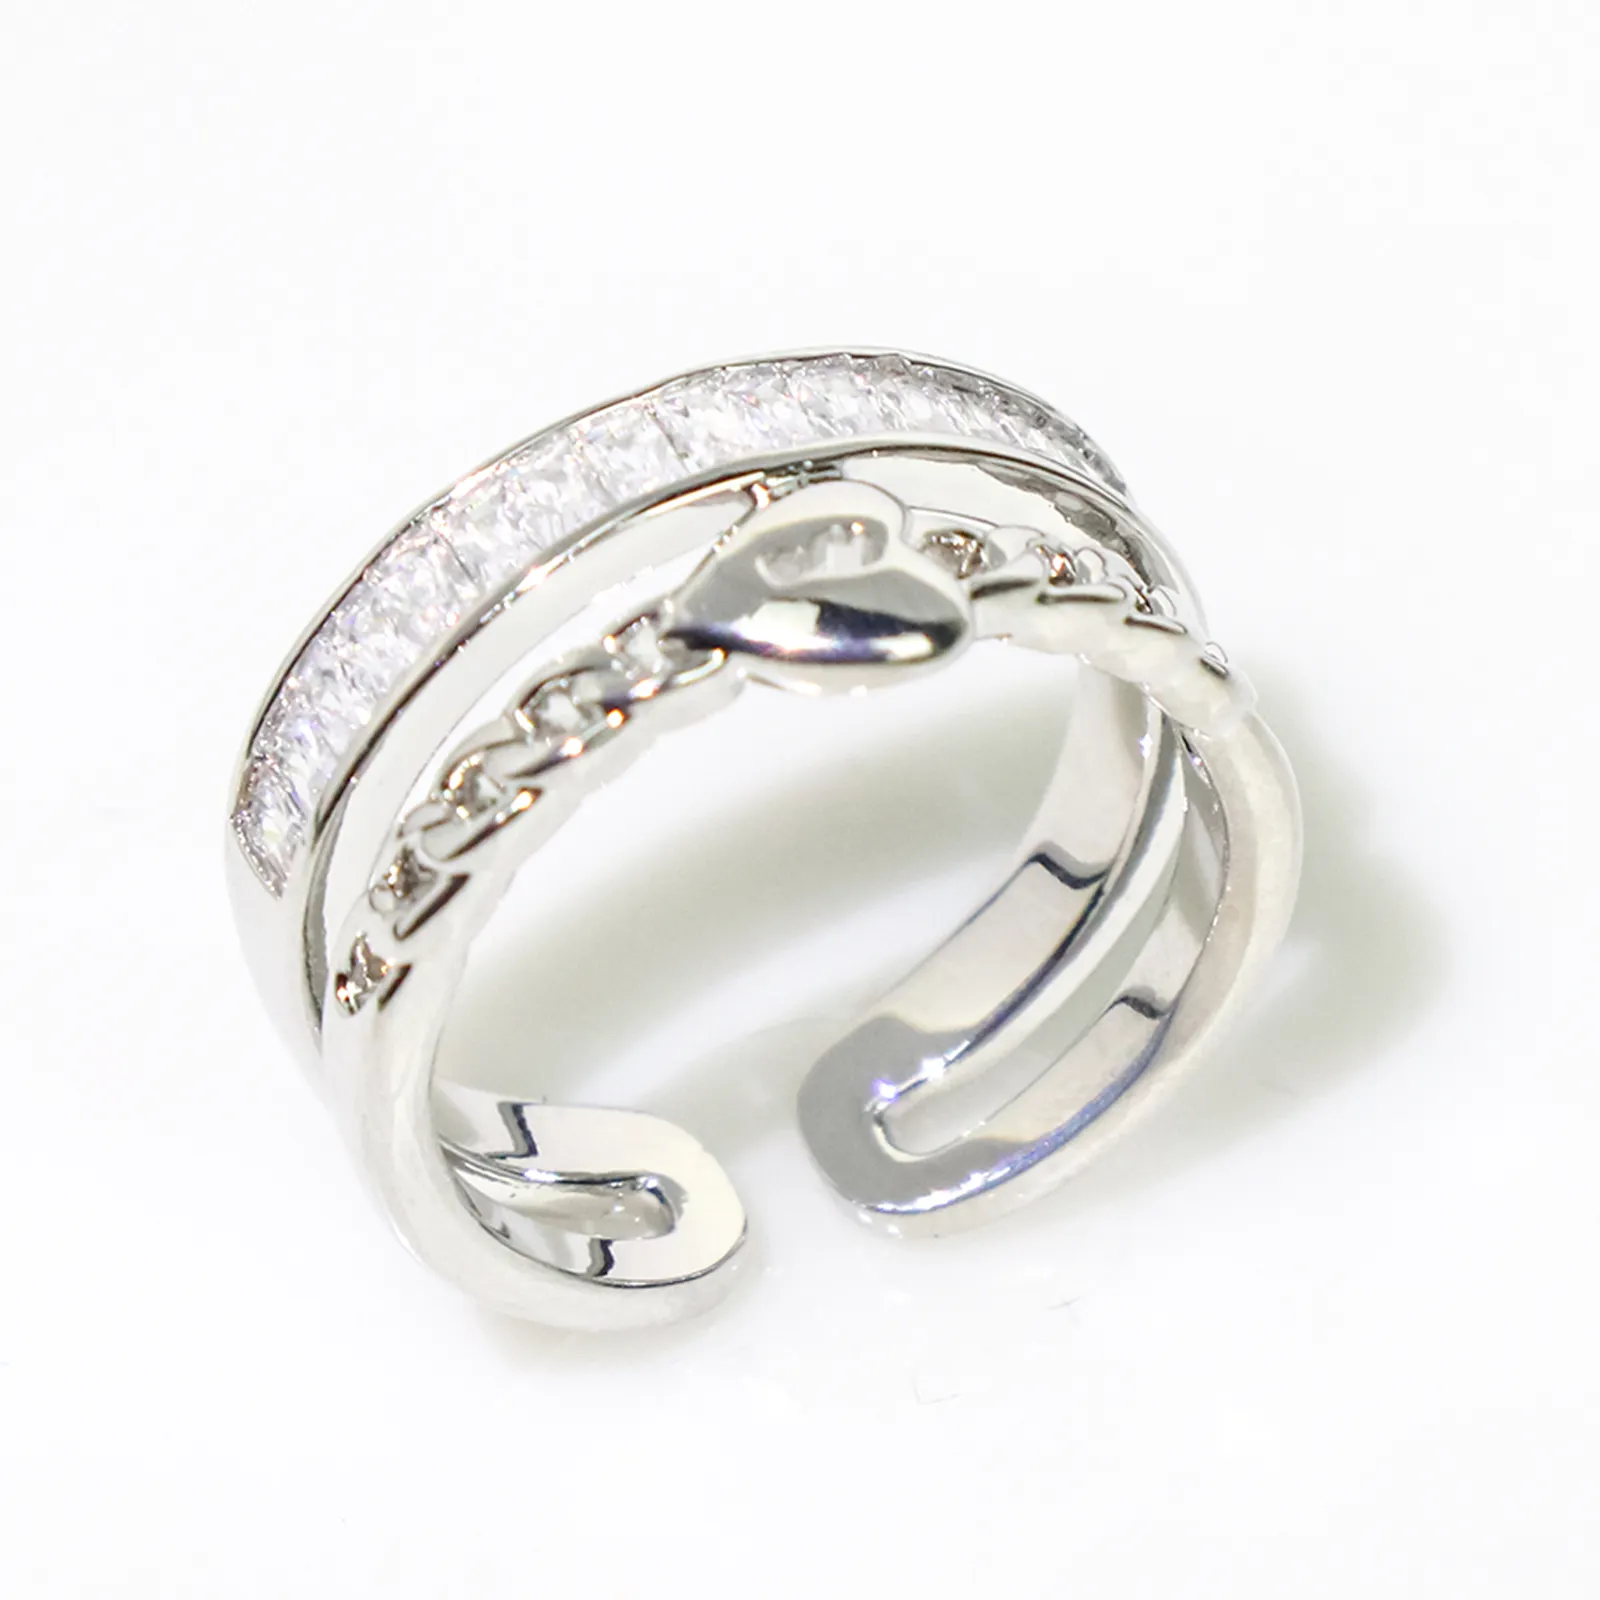 Fornitori pieni di gioielli zircone irregolari dimensioni regolabili anelli 925 argento Sterling Unisex Opp Bag fedi nuziali classiche CN;GUA